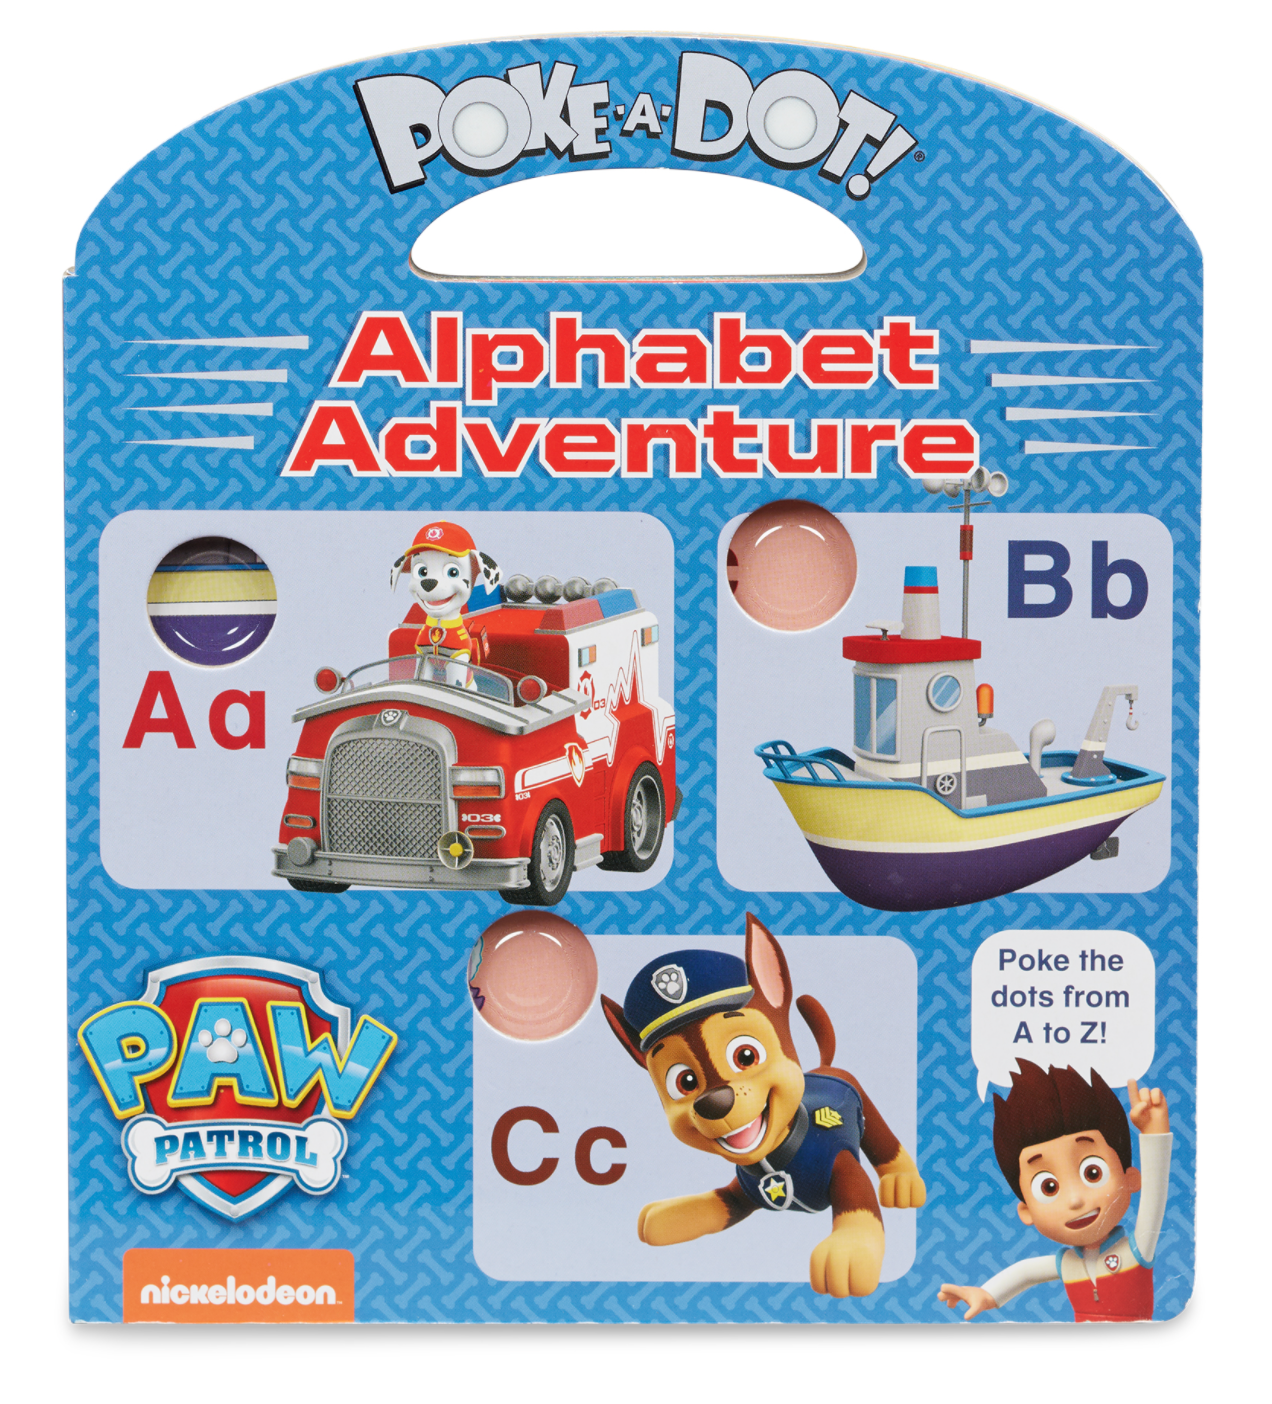 Poke-a-Dot: Paw Patrol - Alphabet Adventure